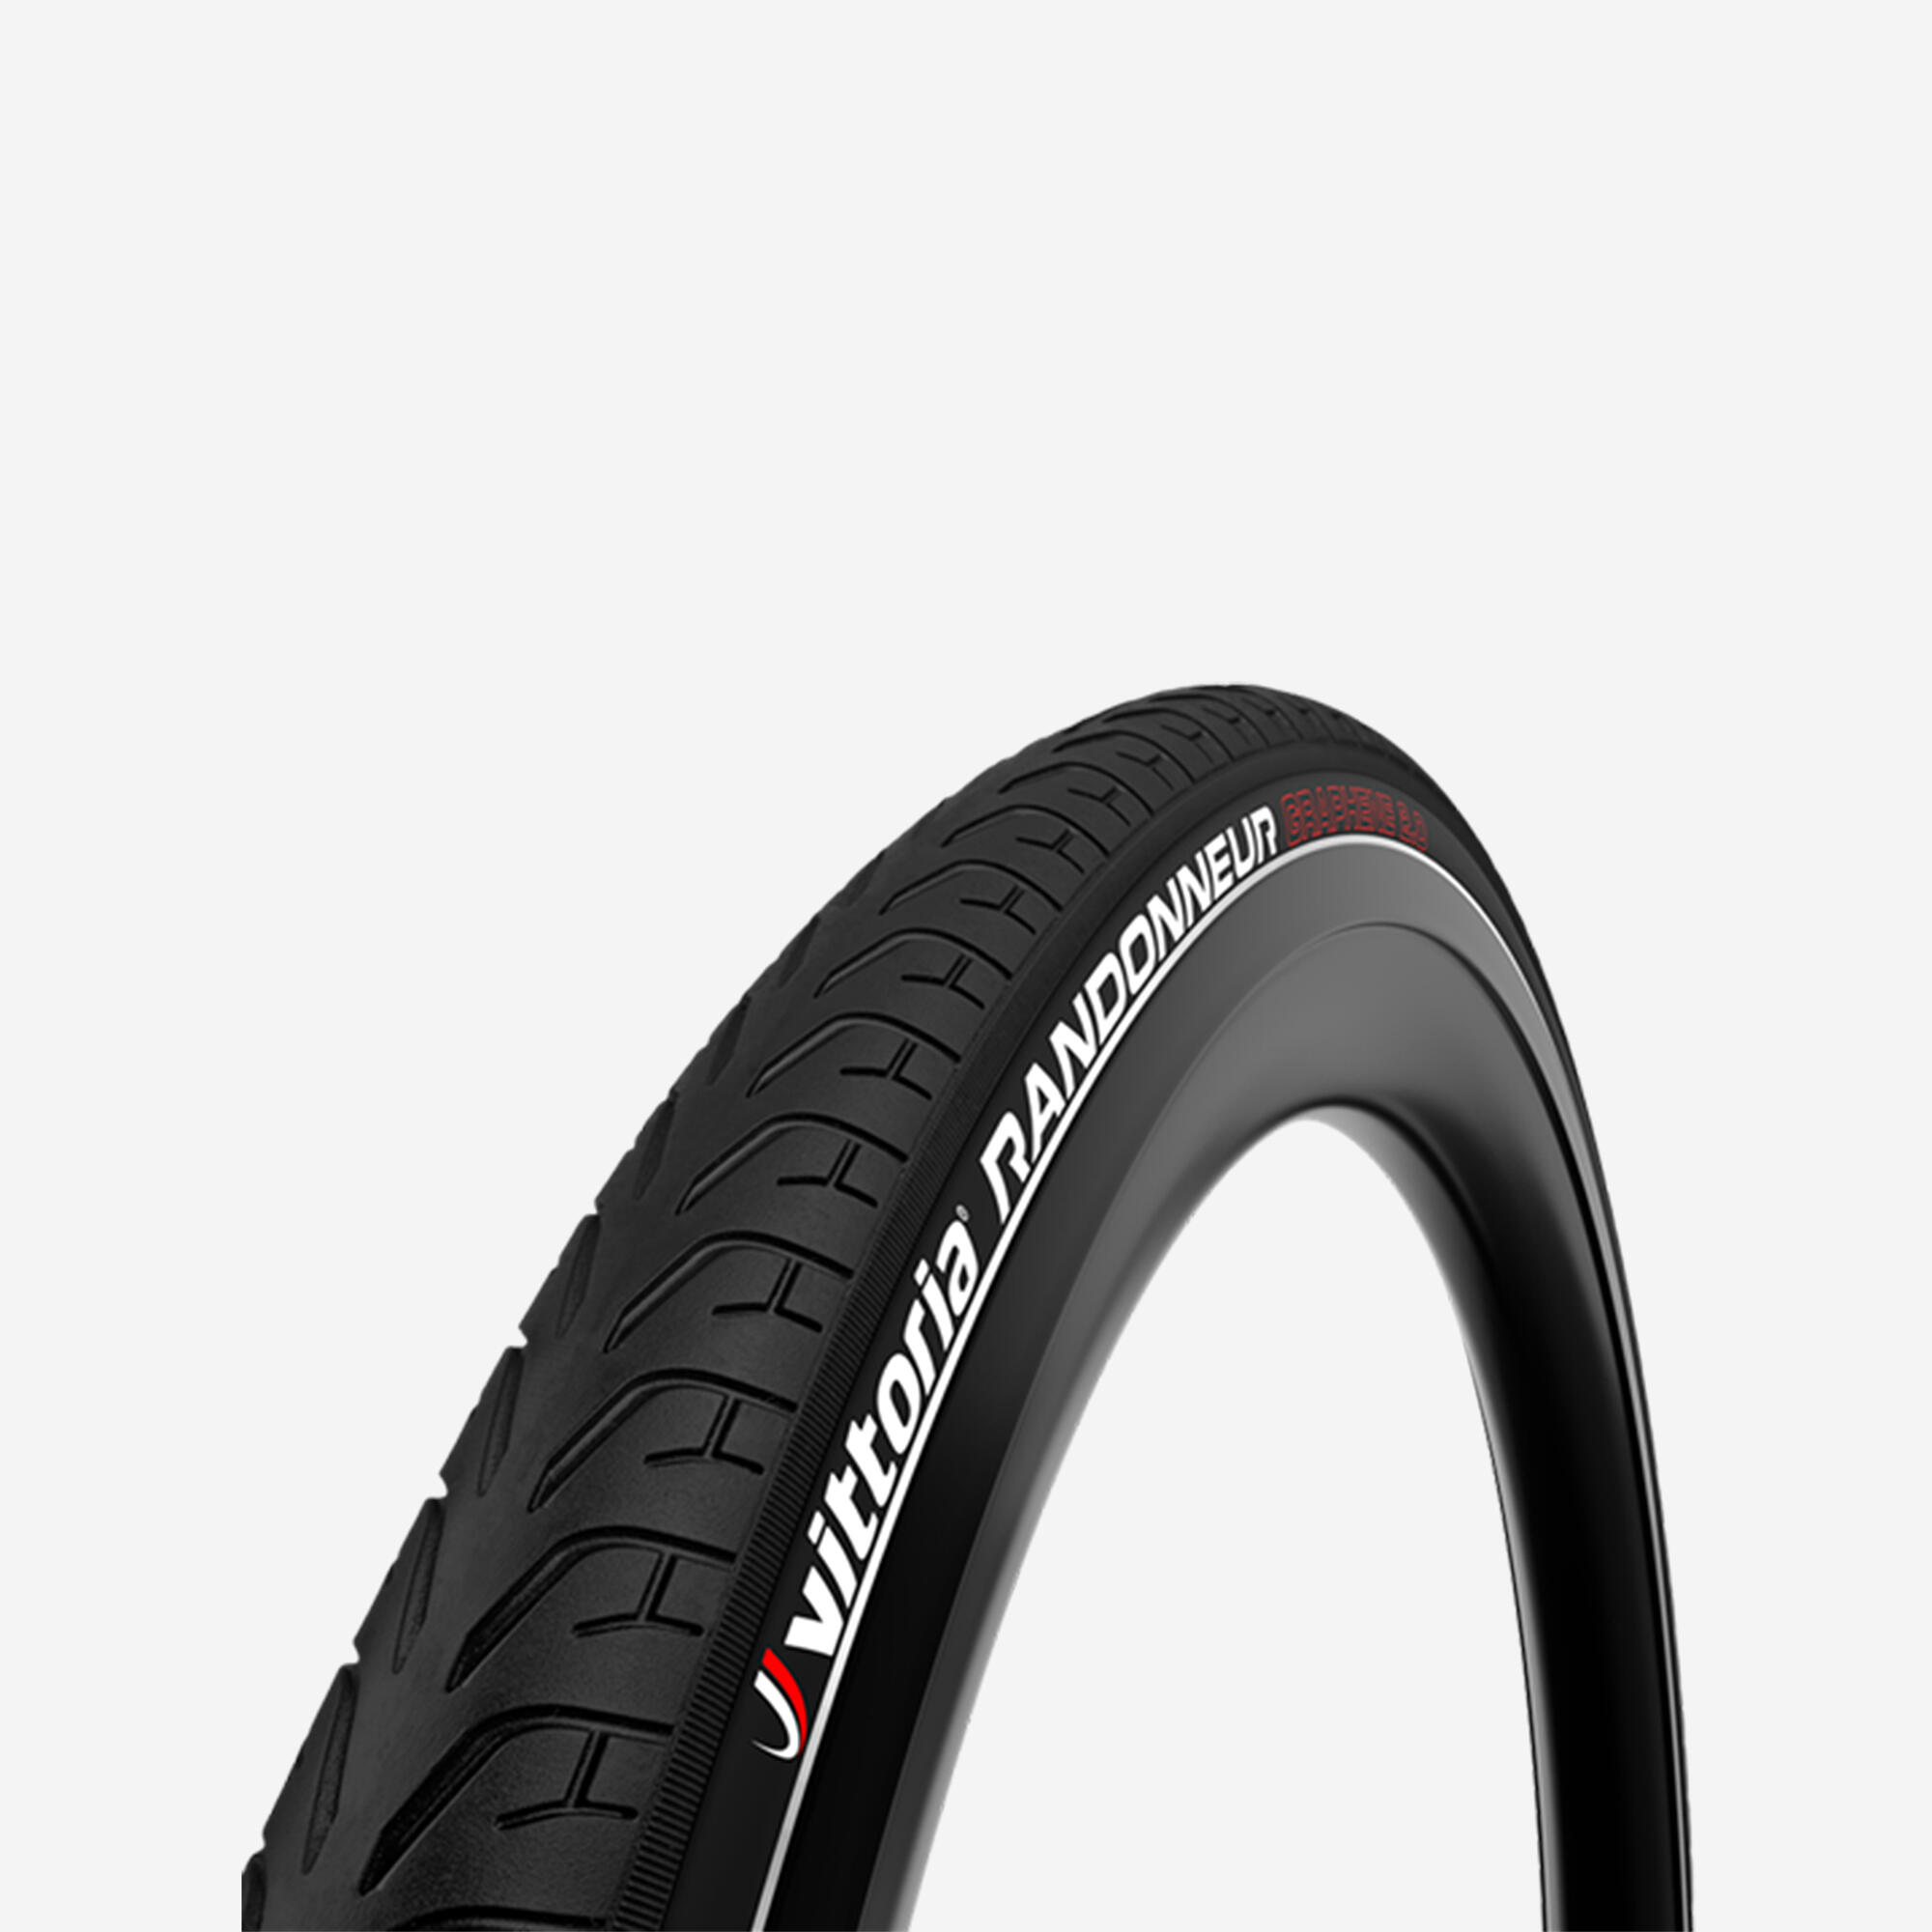 Randonneur Road Bike Tyre 700x28 1/2